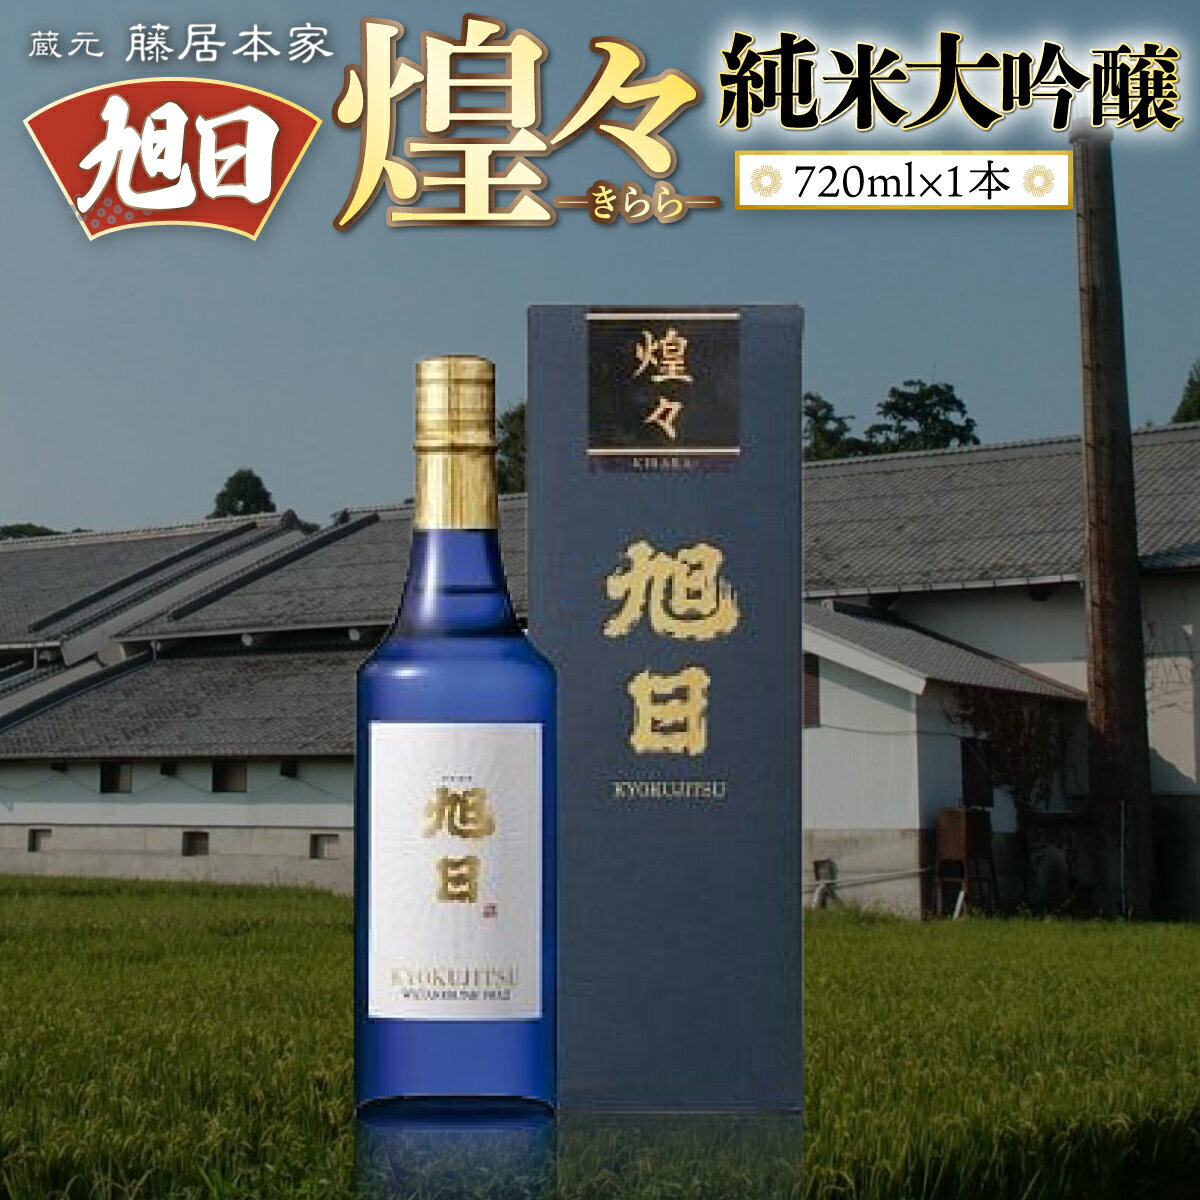 旭日 煌々-きらら- 純米大吟醸 720ml 日本酒